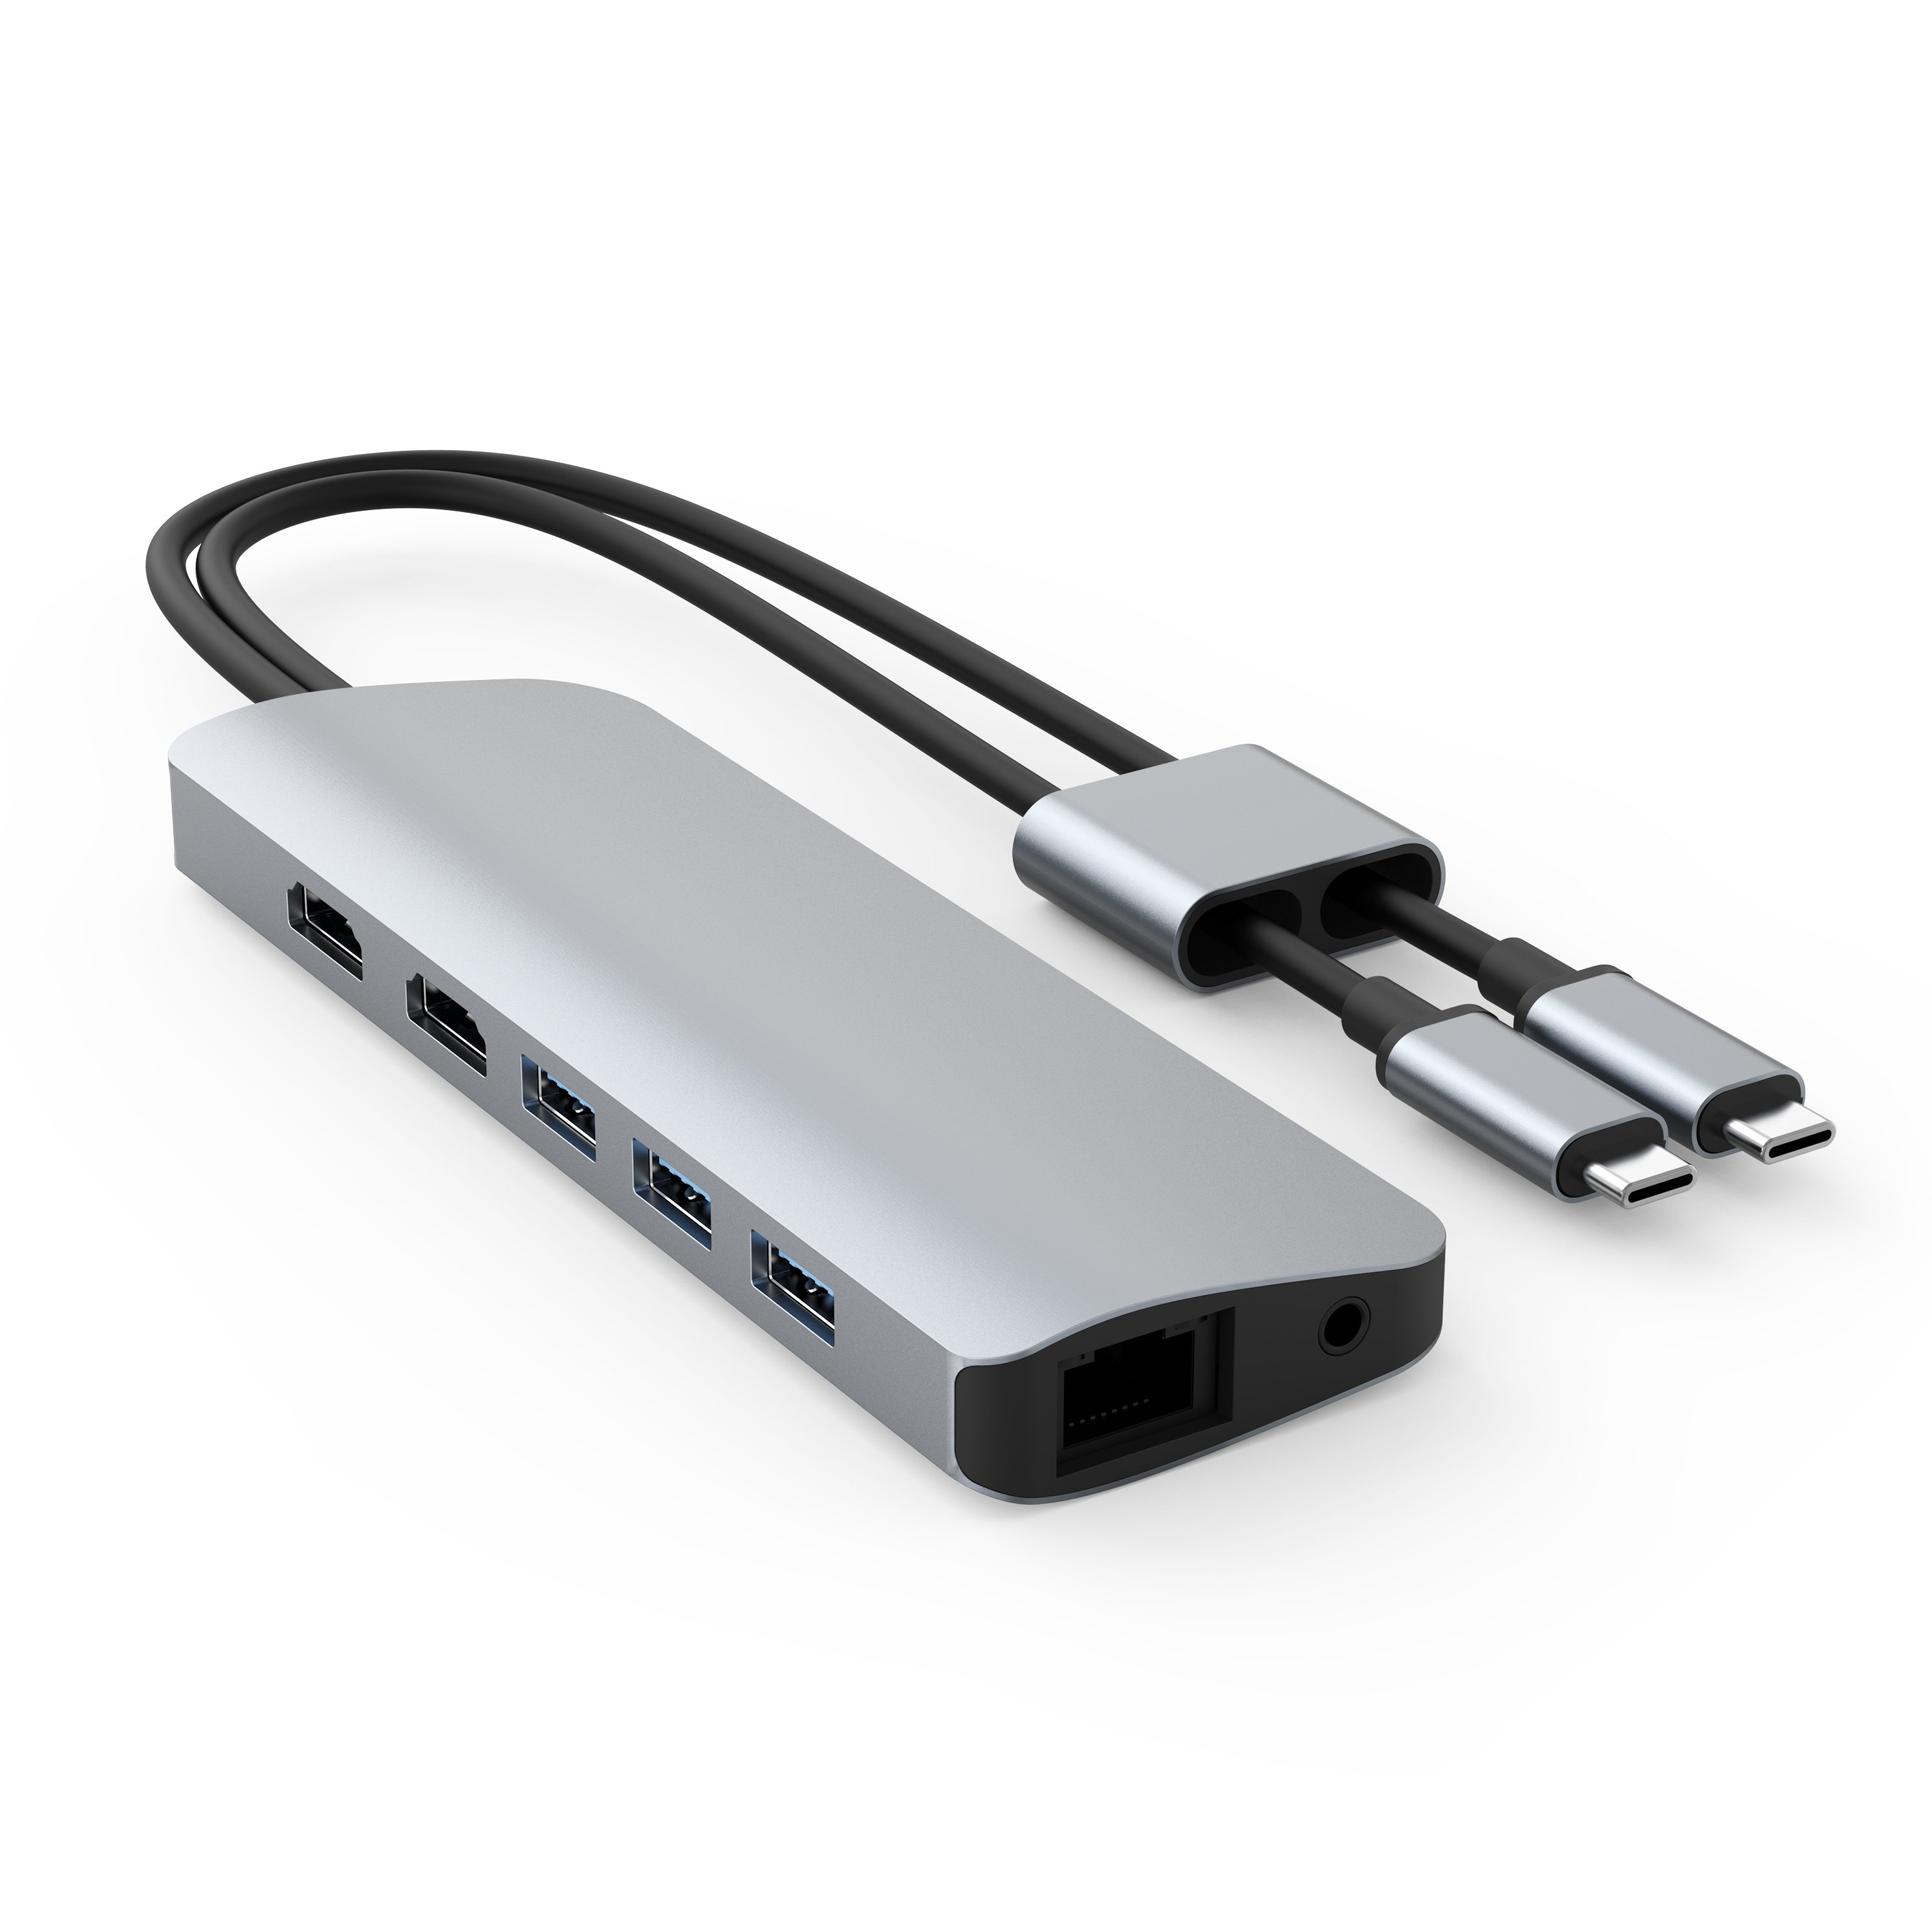 CỔNG CHUYỂN HYPERDRIVE VIBER 10-IN-2 4K60HZ USB-C HUB FOR MACBOOK/IPADPRO/LAPTOP/SMARTPHONE -HÀNG CHÍNH HÃNG